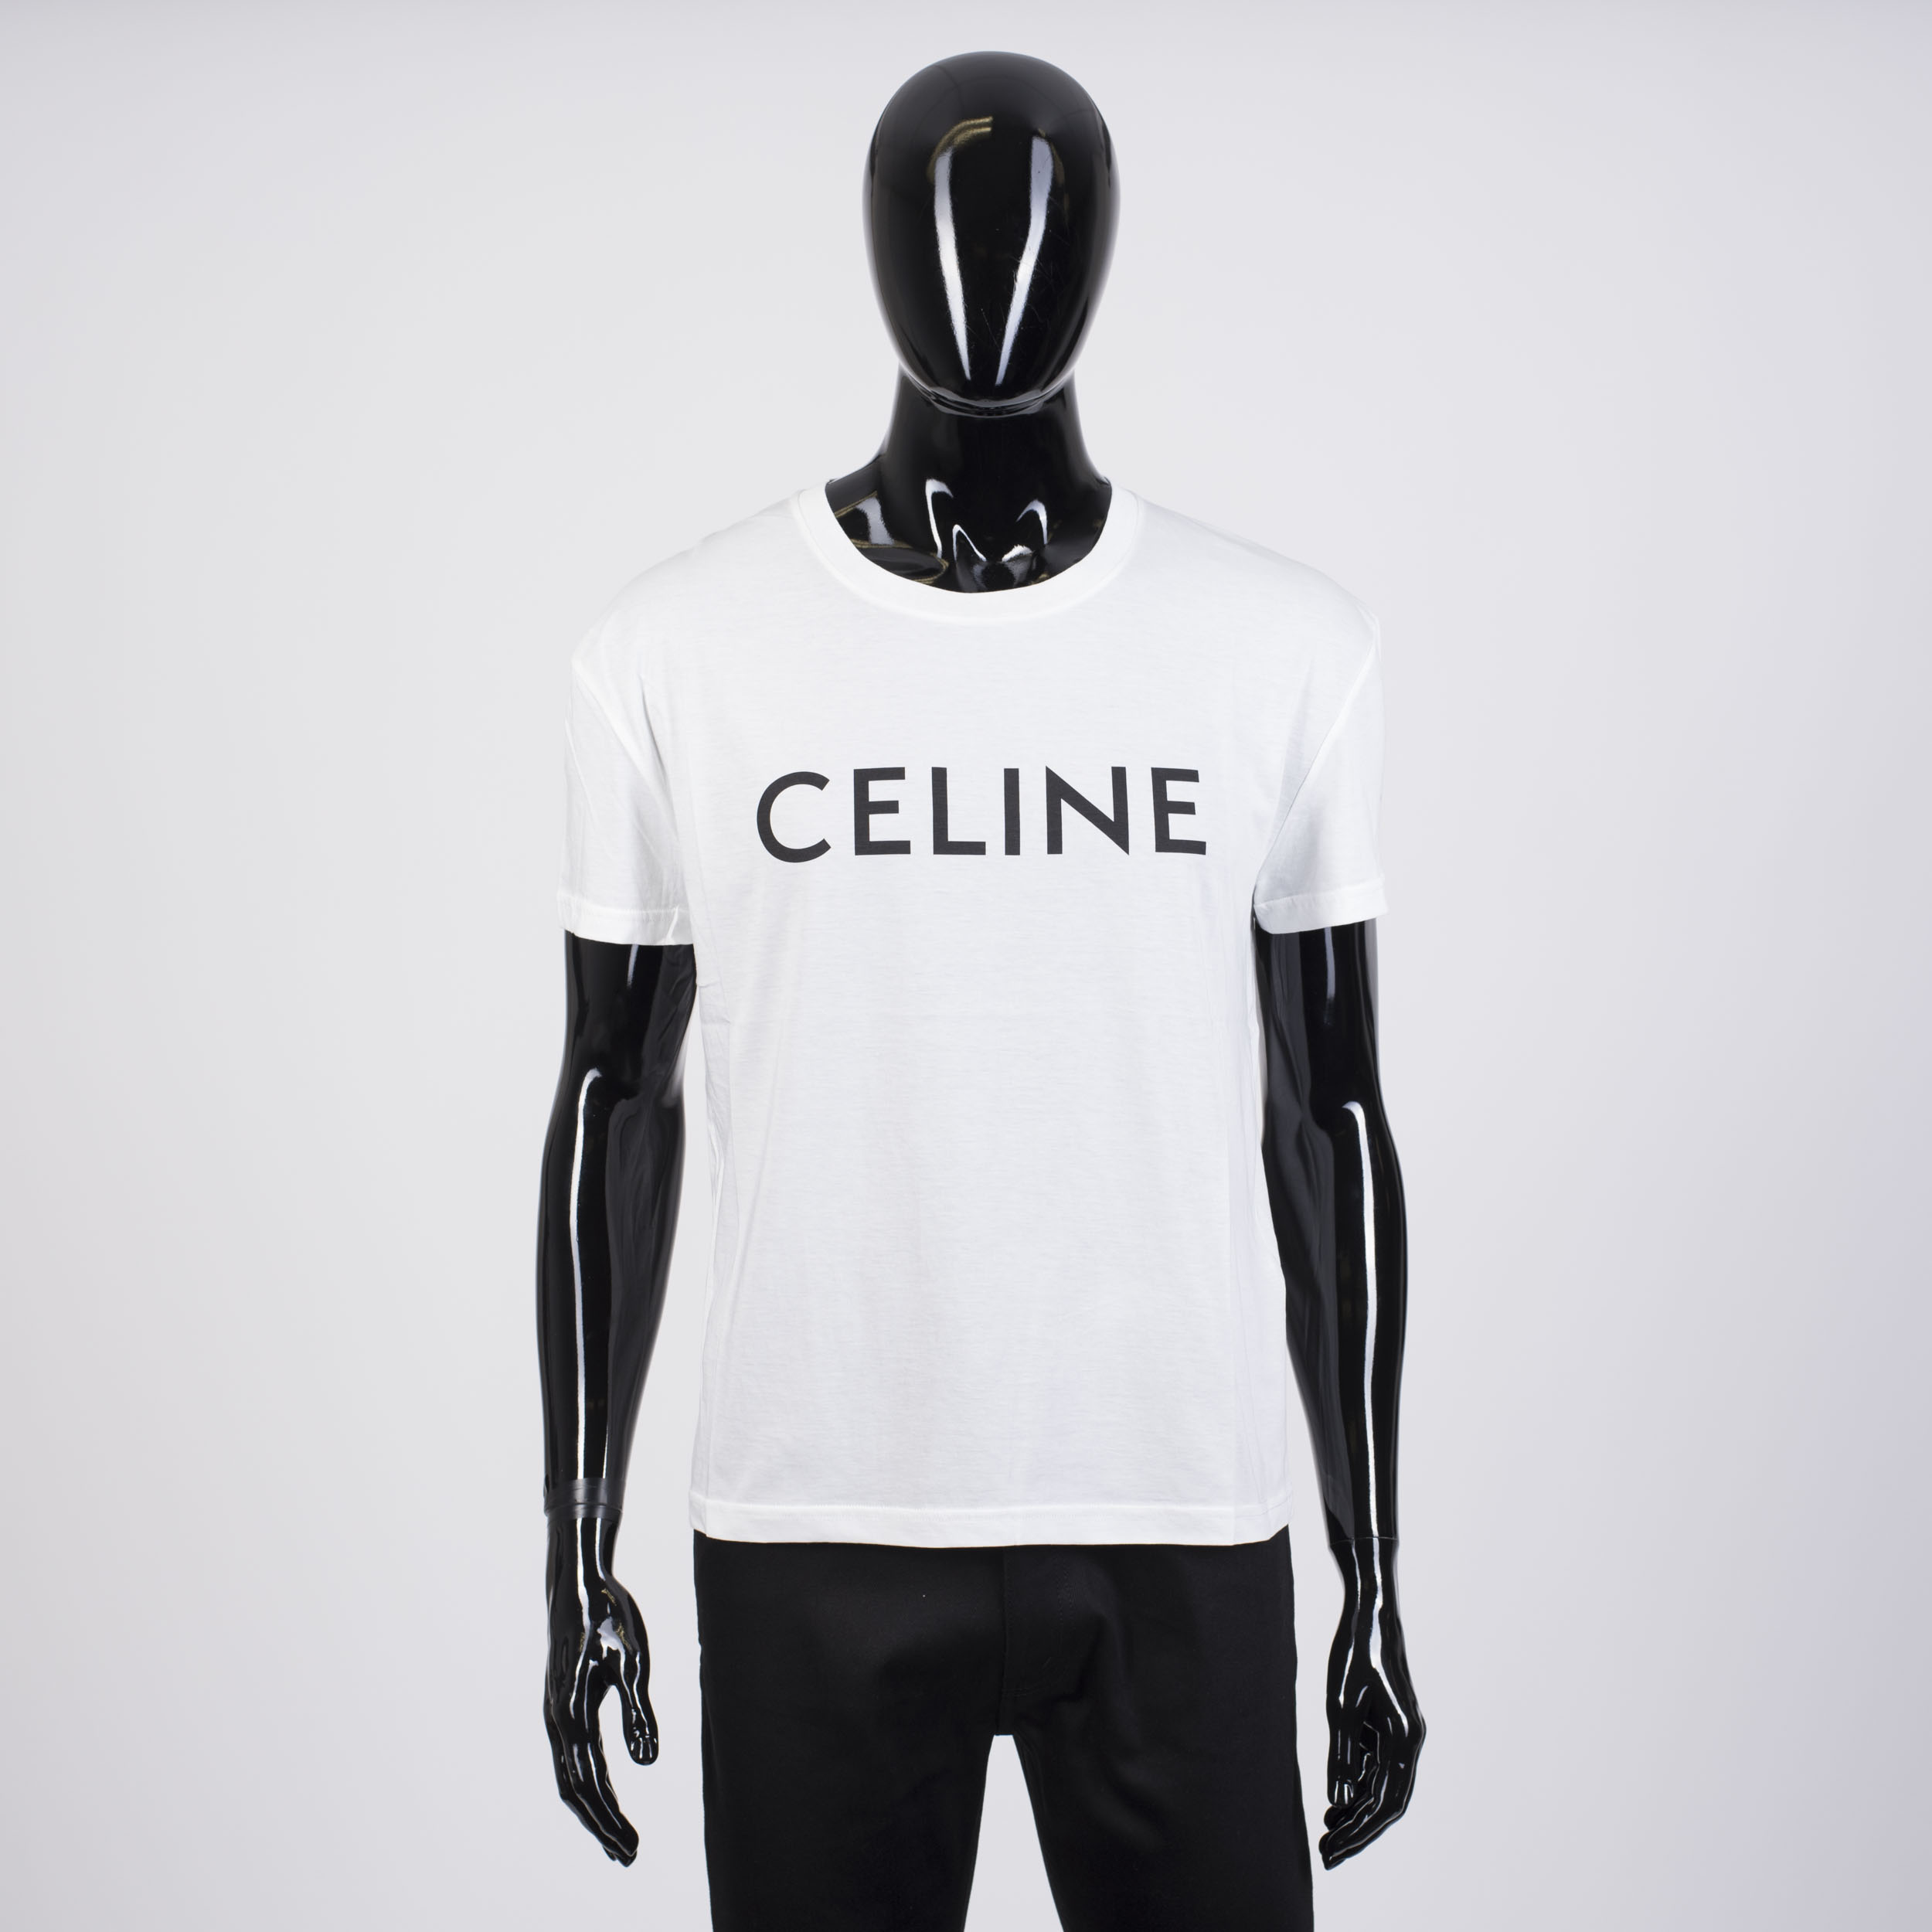 Celine Logo T Shirt Shop, 52% OFF | www.campingcanyelles.com